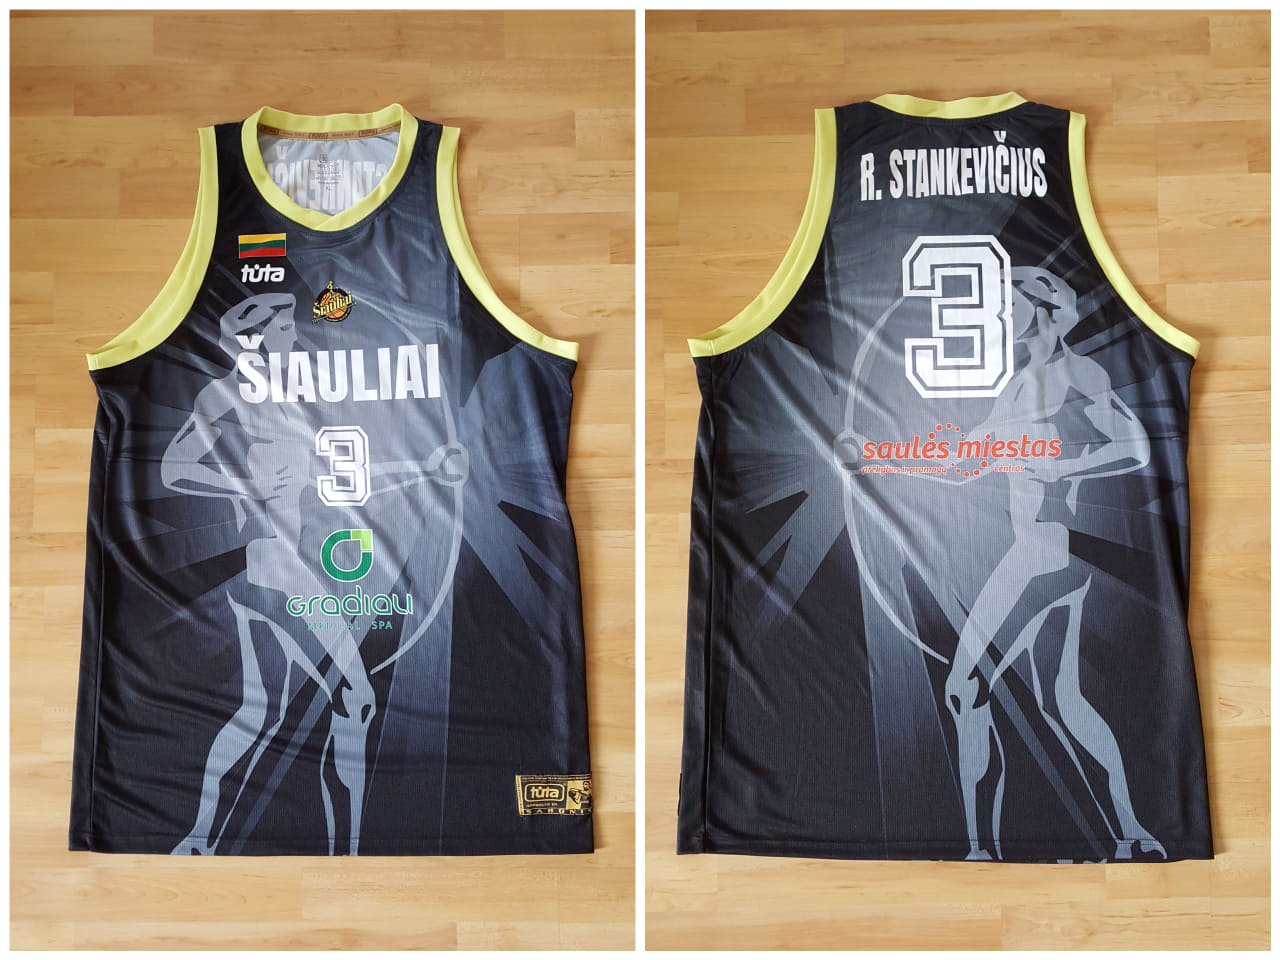 BC Šiauliai. Marškinėliai - Rokas Stankevičius (2018-18, FIBA Čempionų lyga)